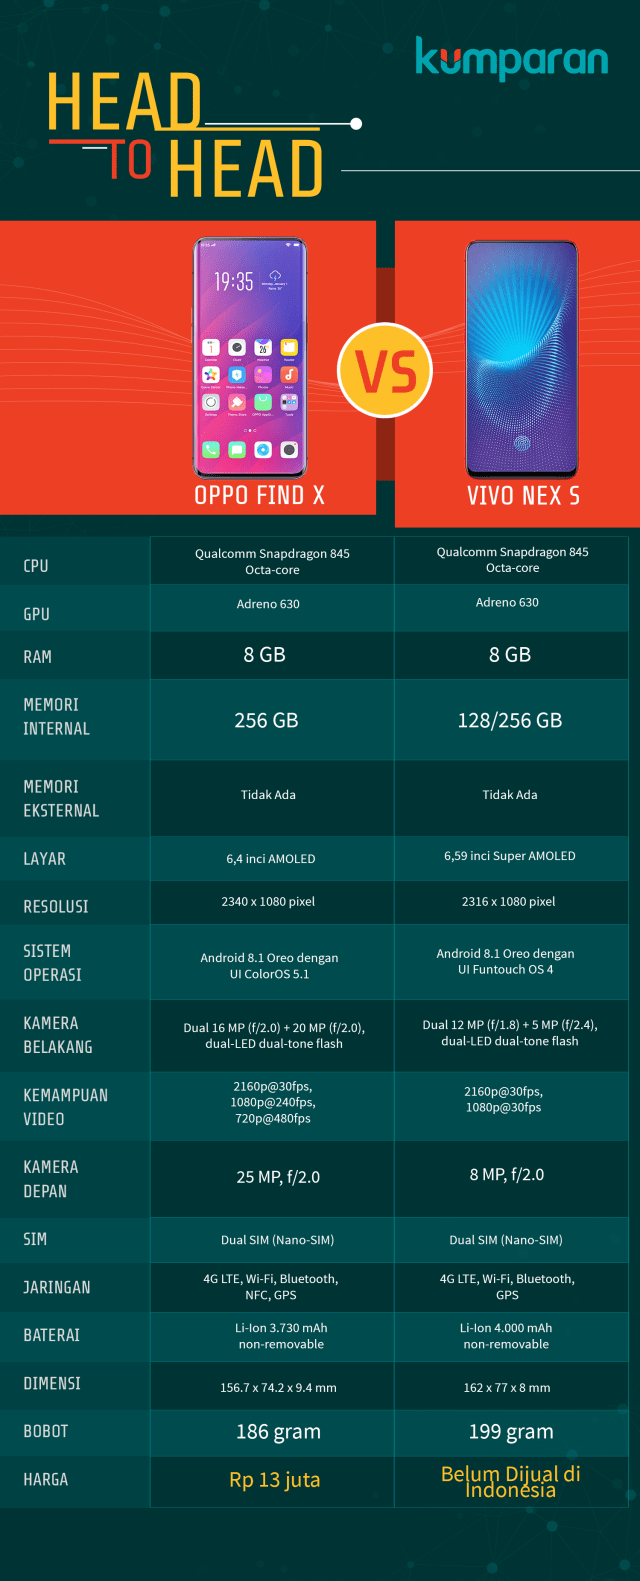 Spesifikasi Oppo Find X dan Vivo Nex S. (Foto: Mateus Situmorang/kumparan)